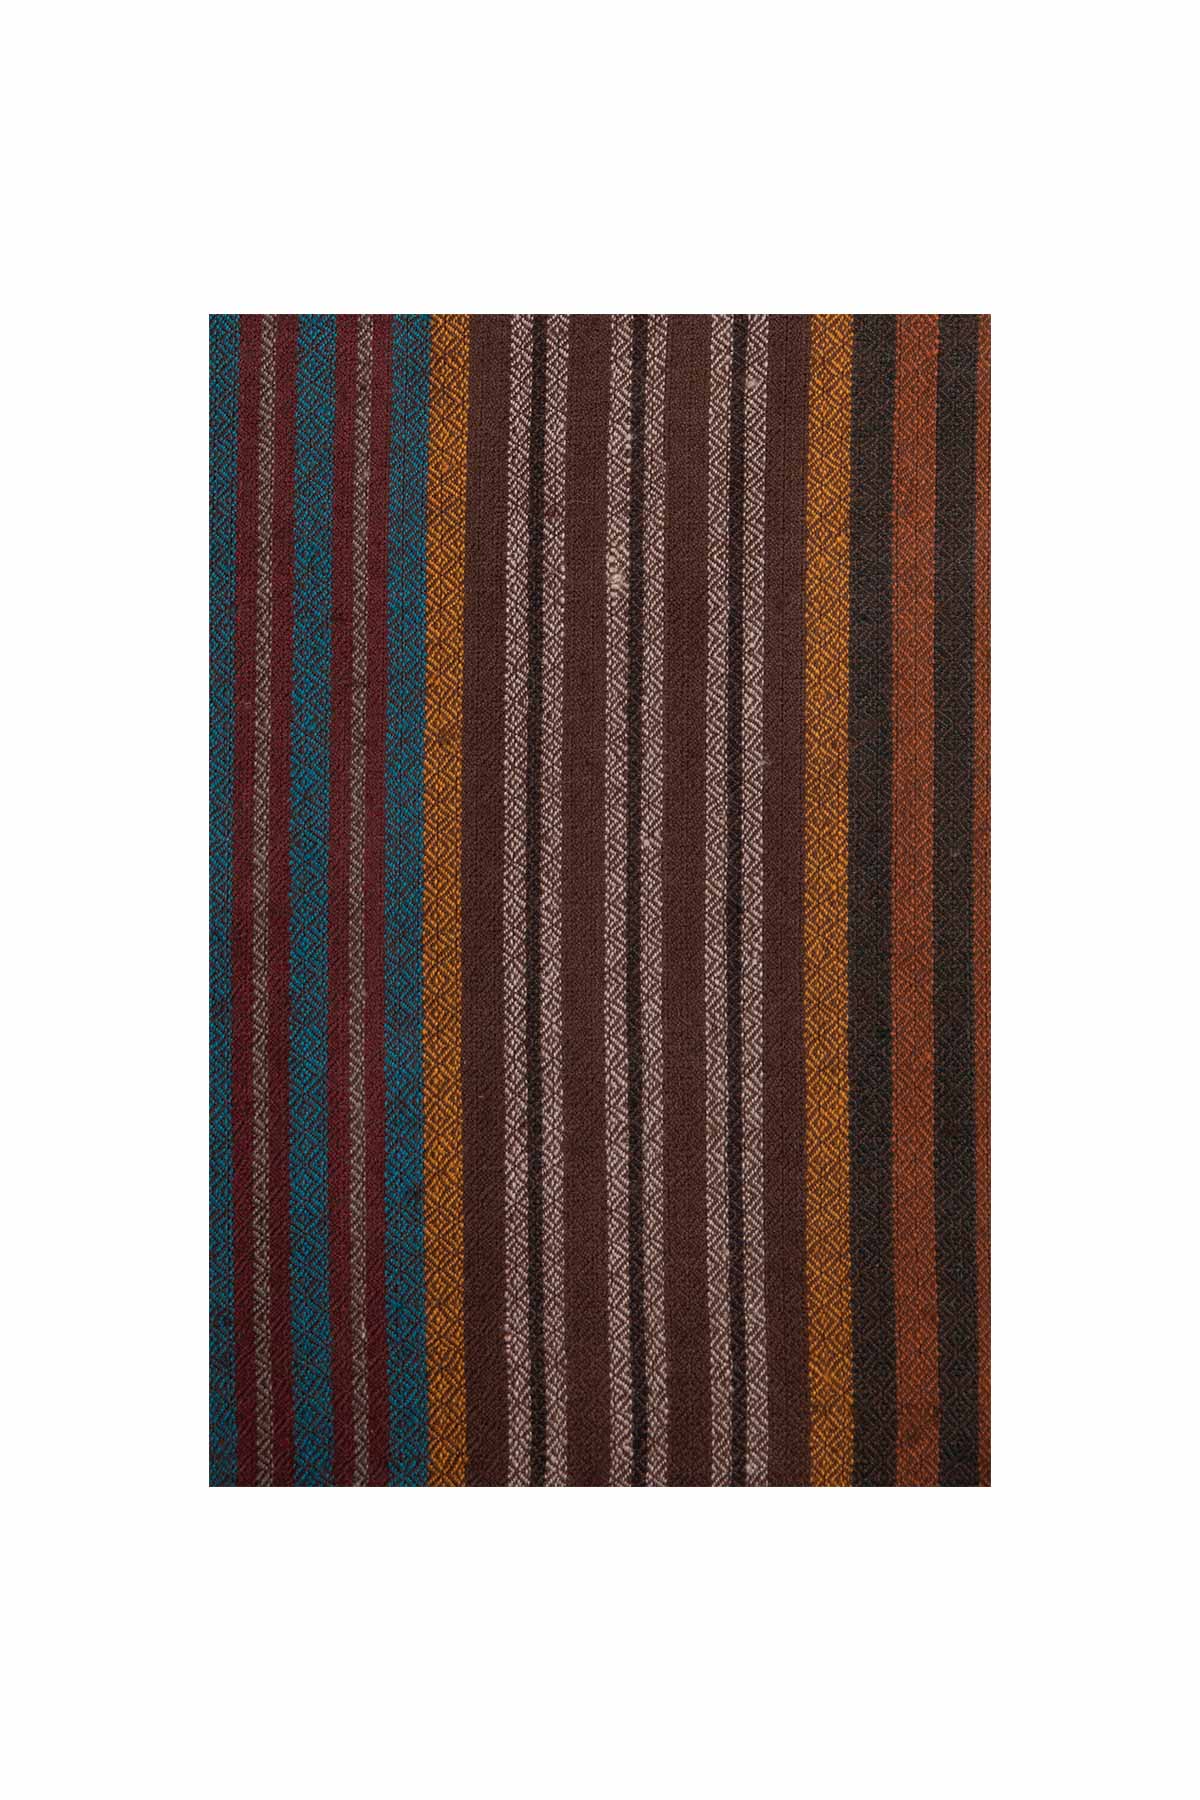 Multi Stripe Pashmina Shawl - Thin Brown, Orange & Blue